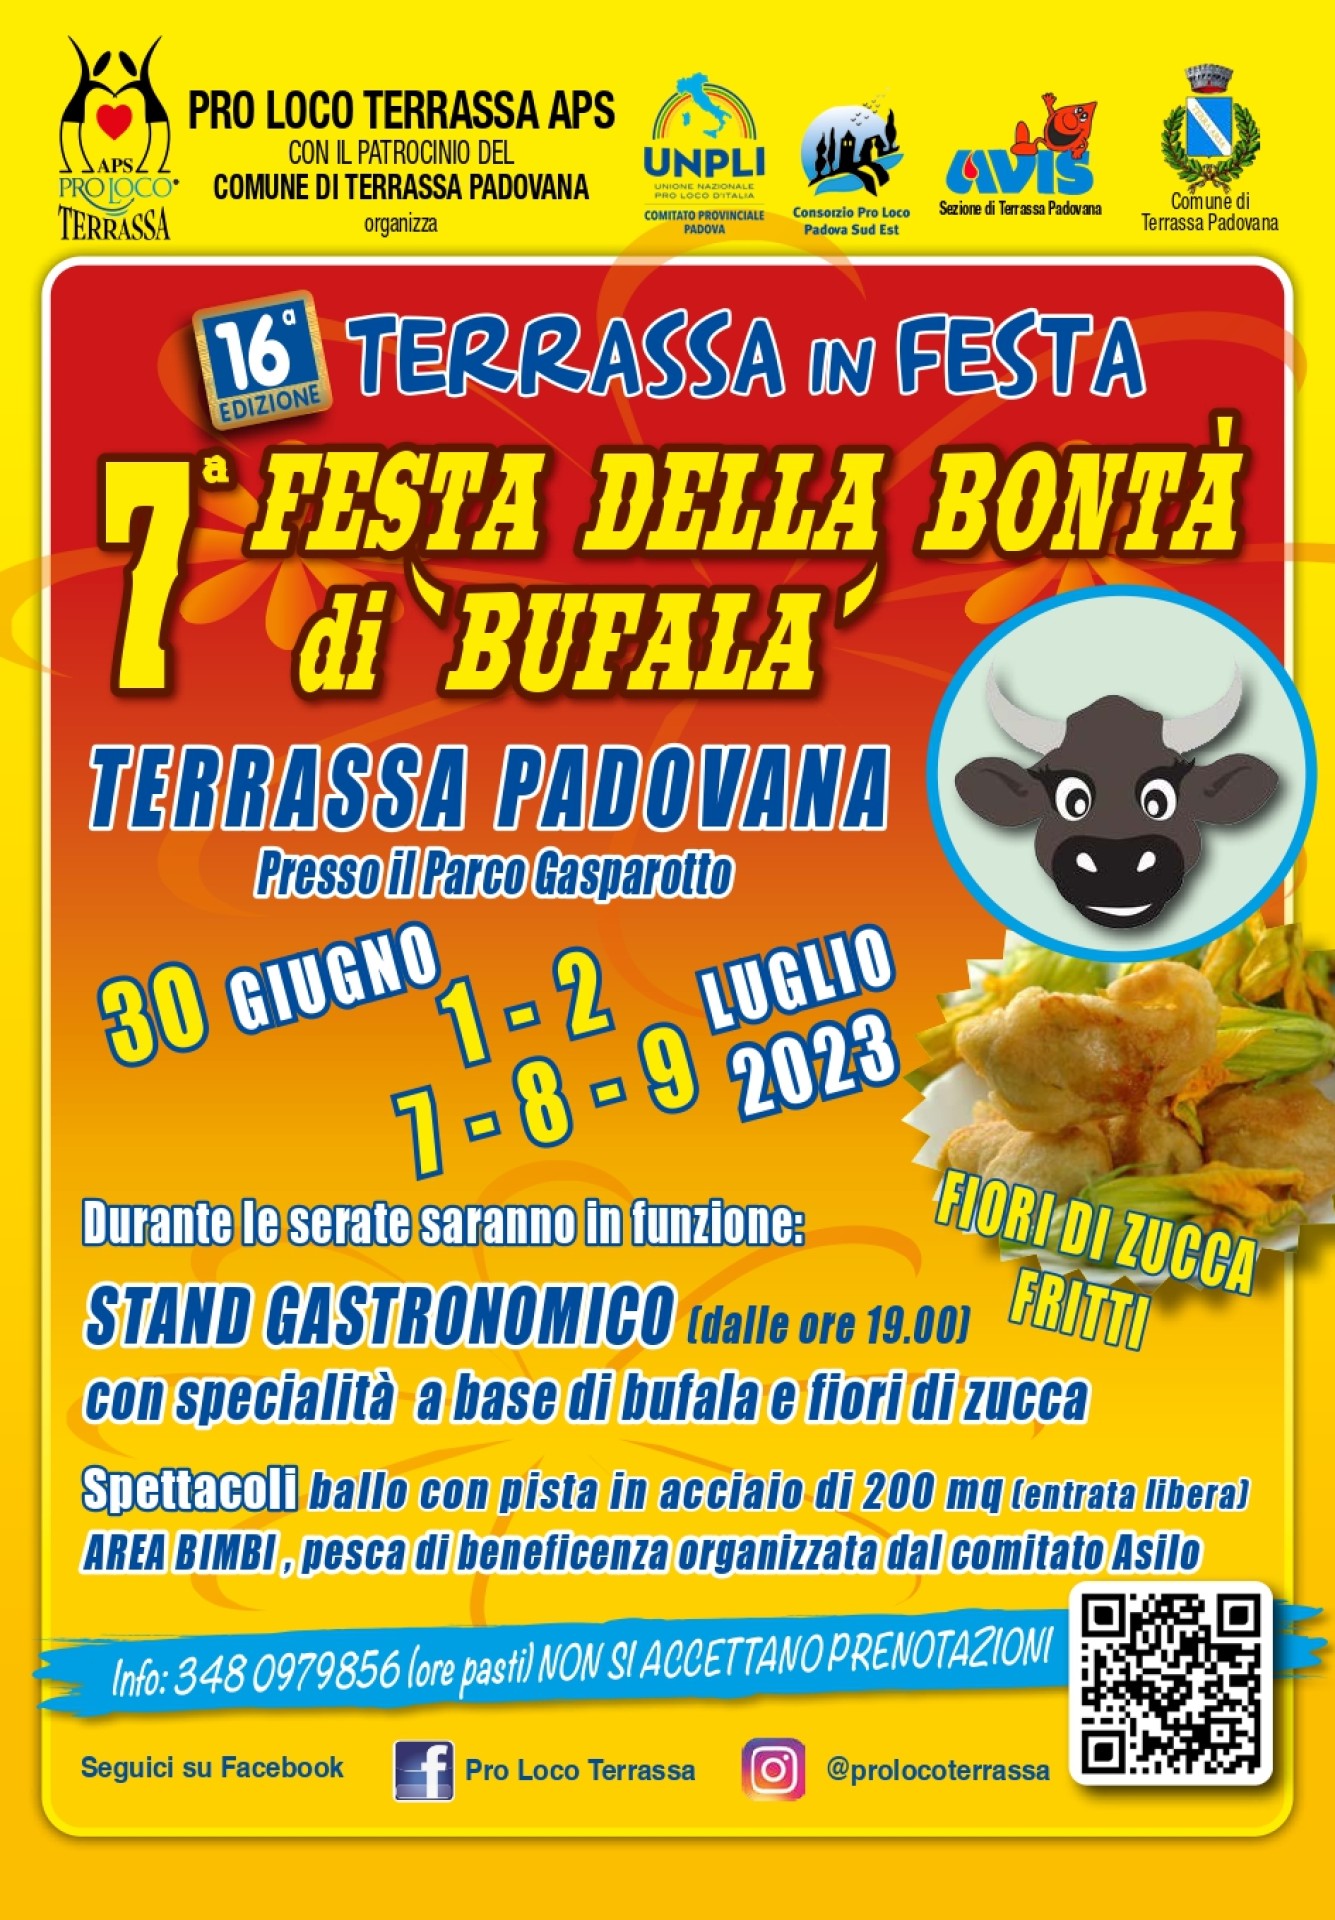 7° FESTA DELLA BONTA' DI BUFALA - 16° TERRASSA IN FESTA